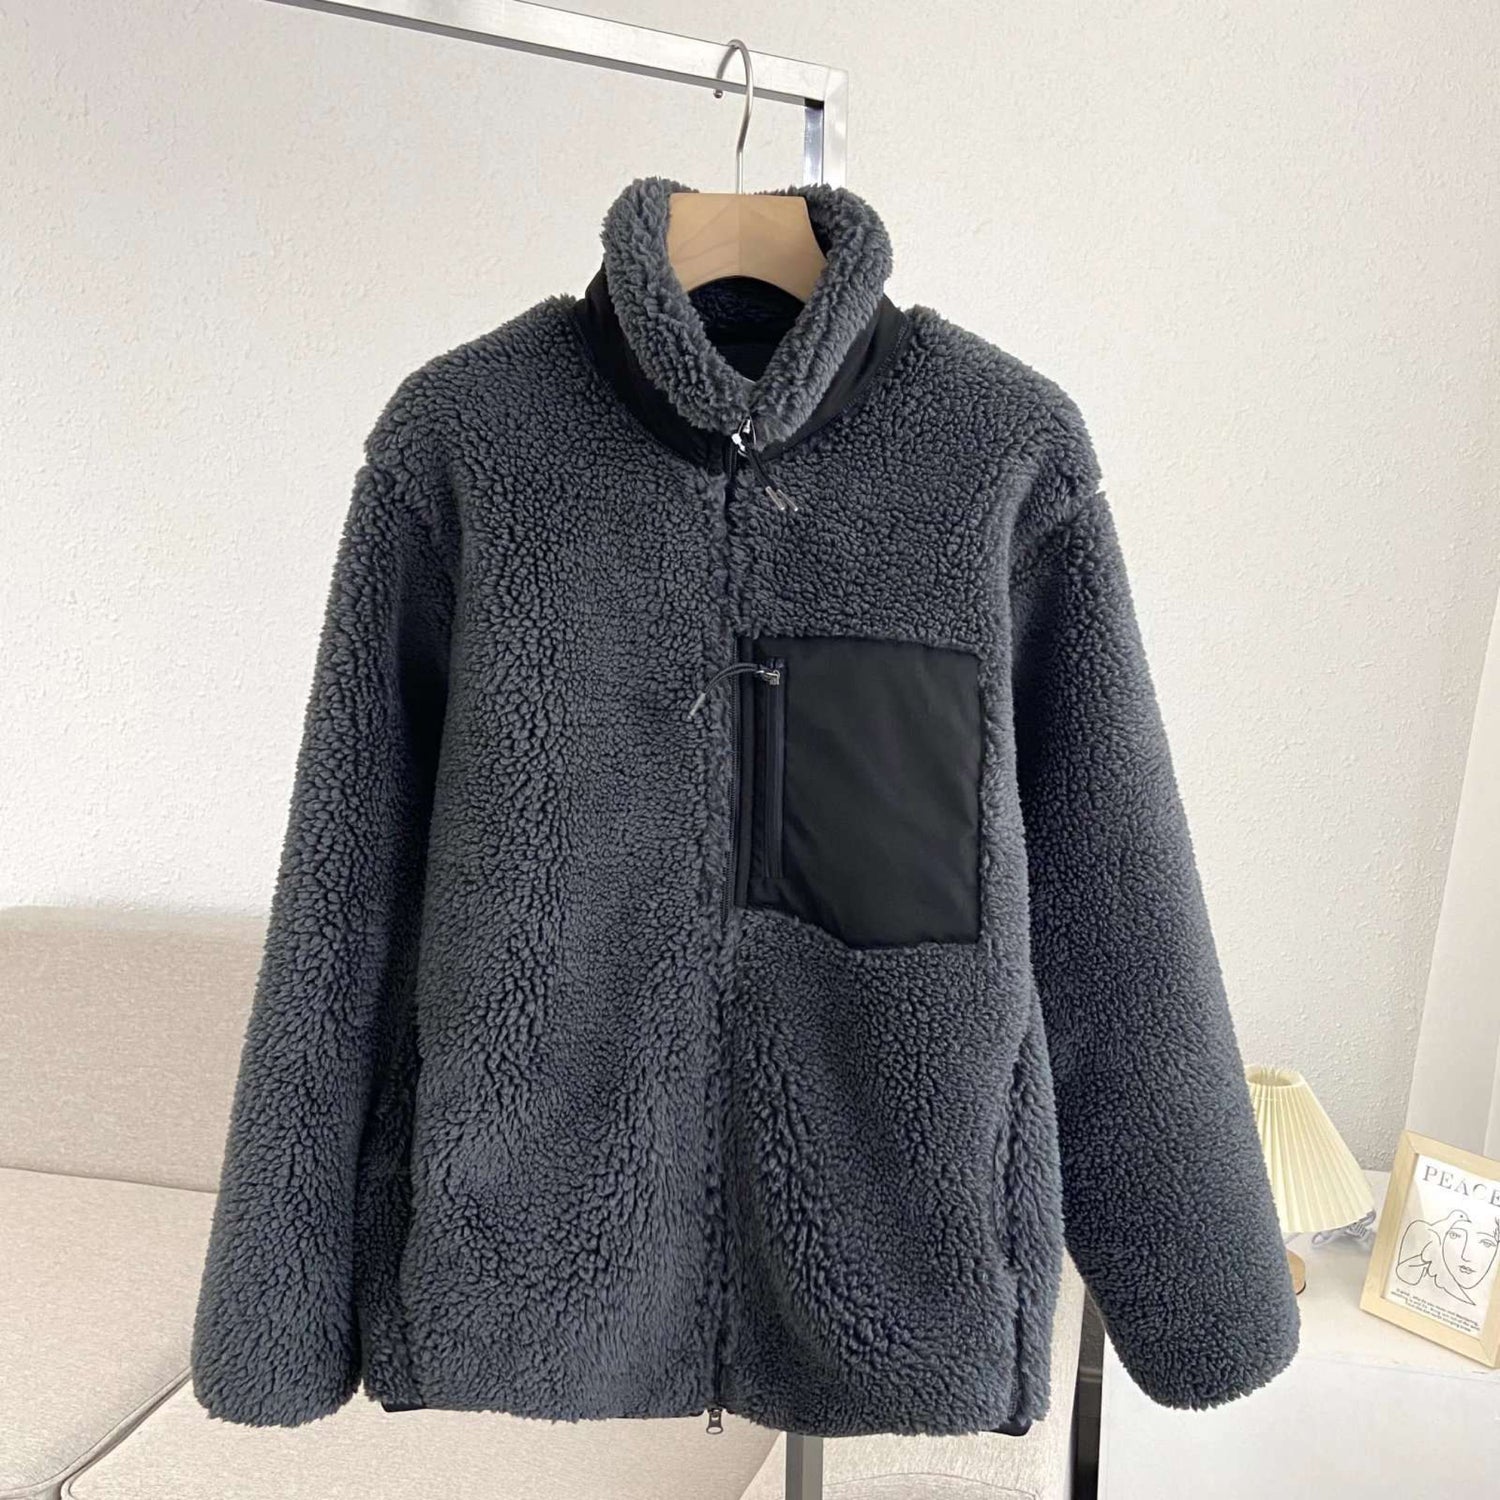 Adults personalised fleece jacket GREY